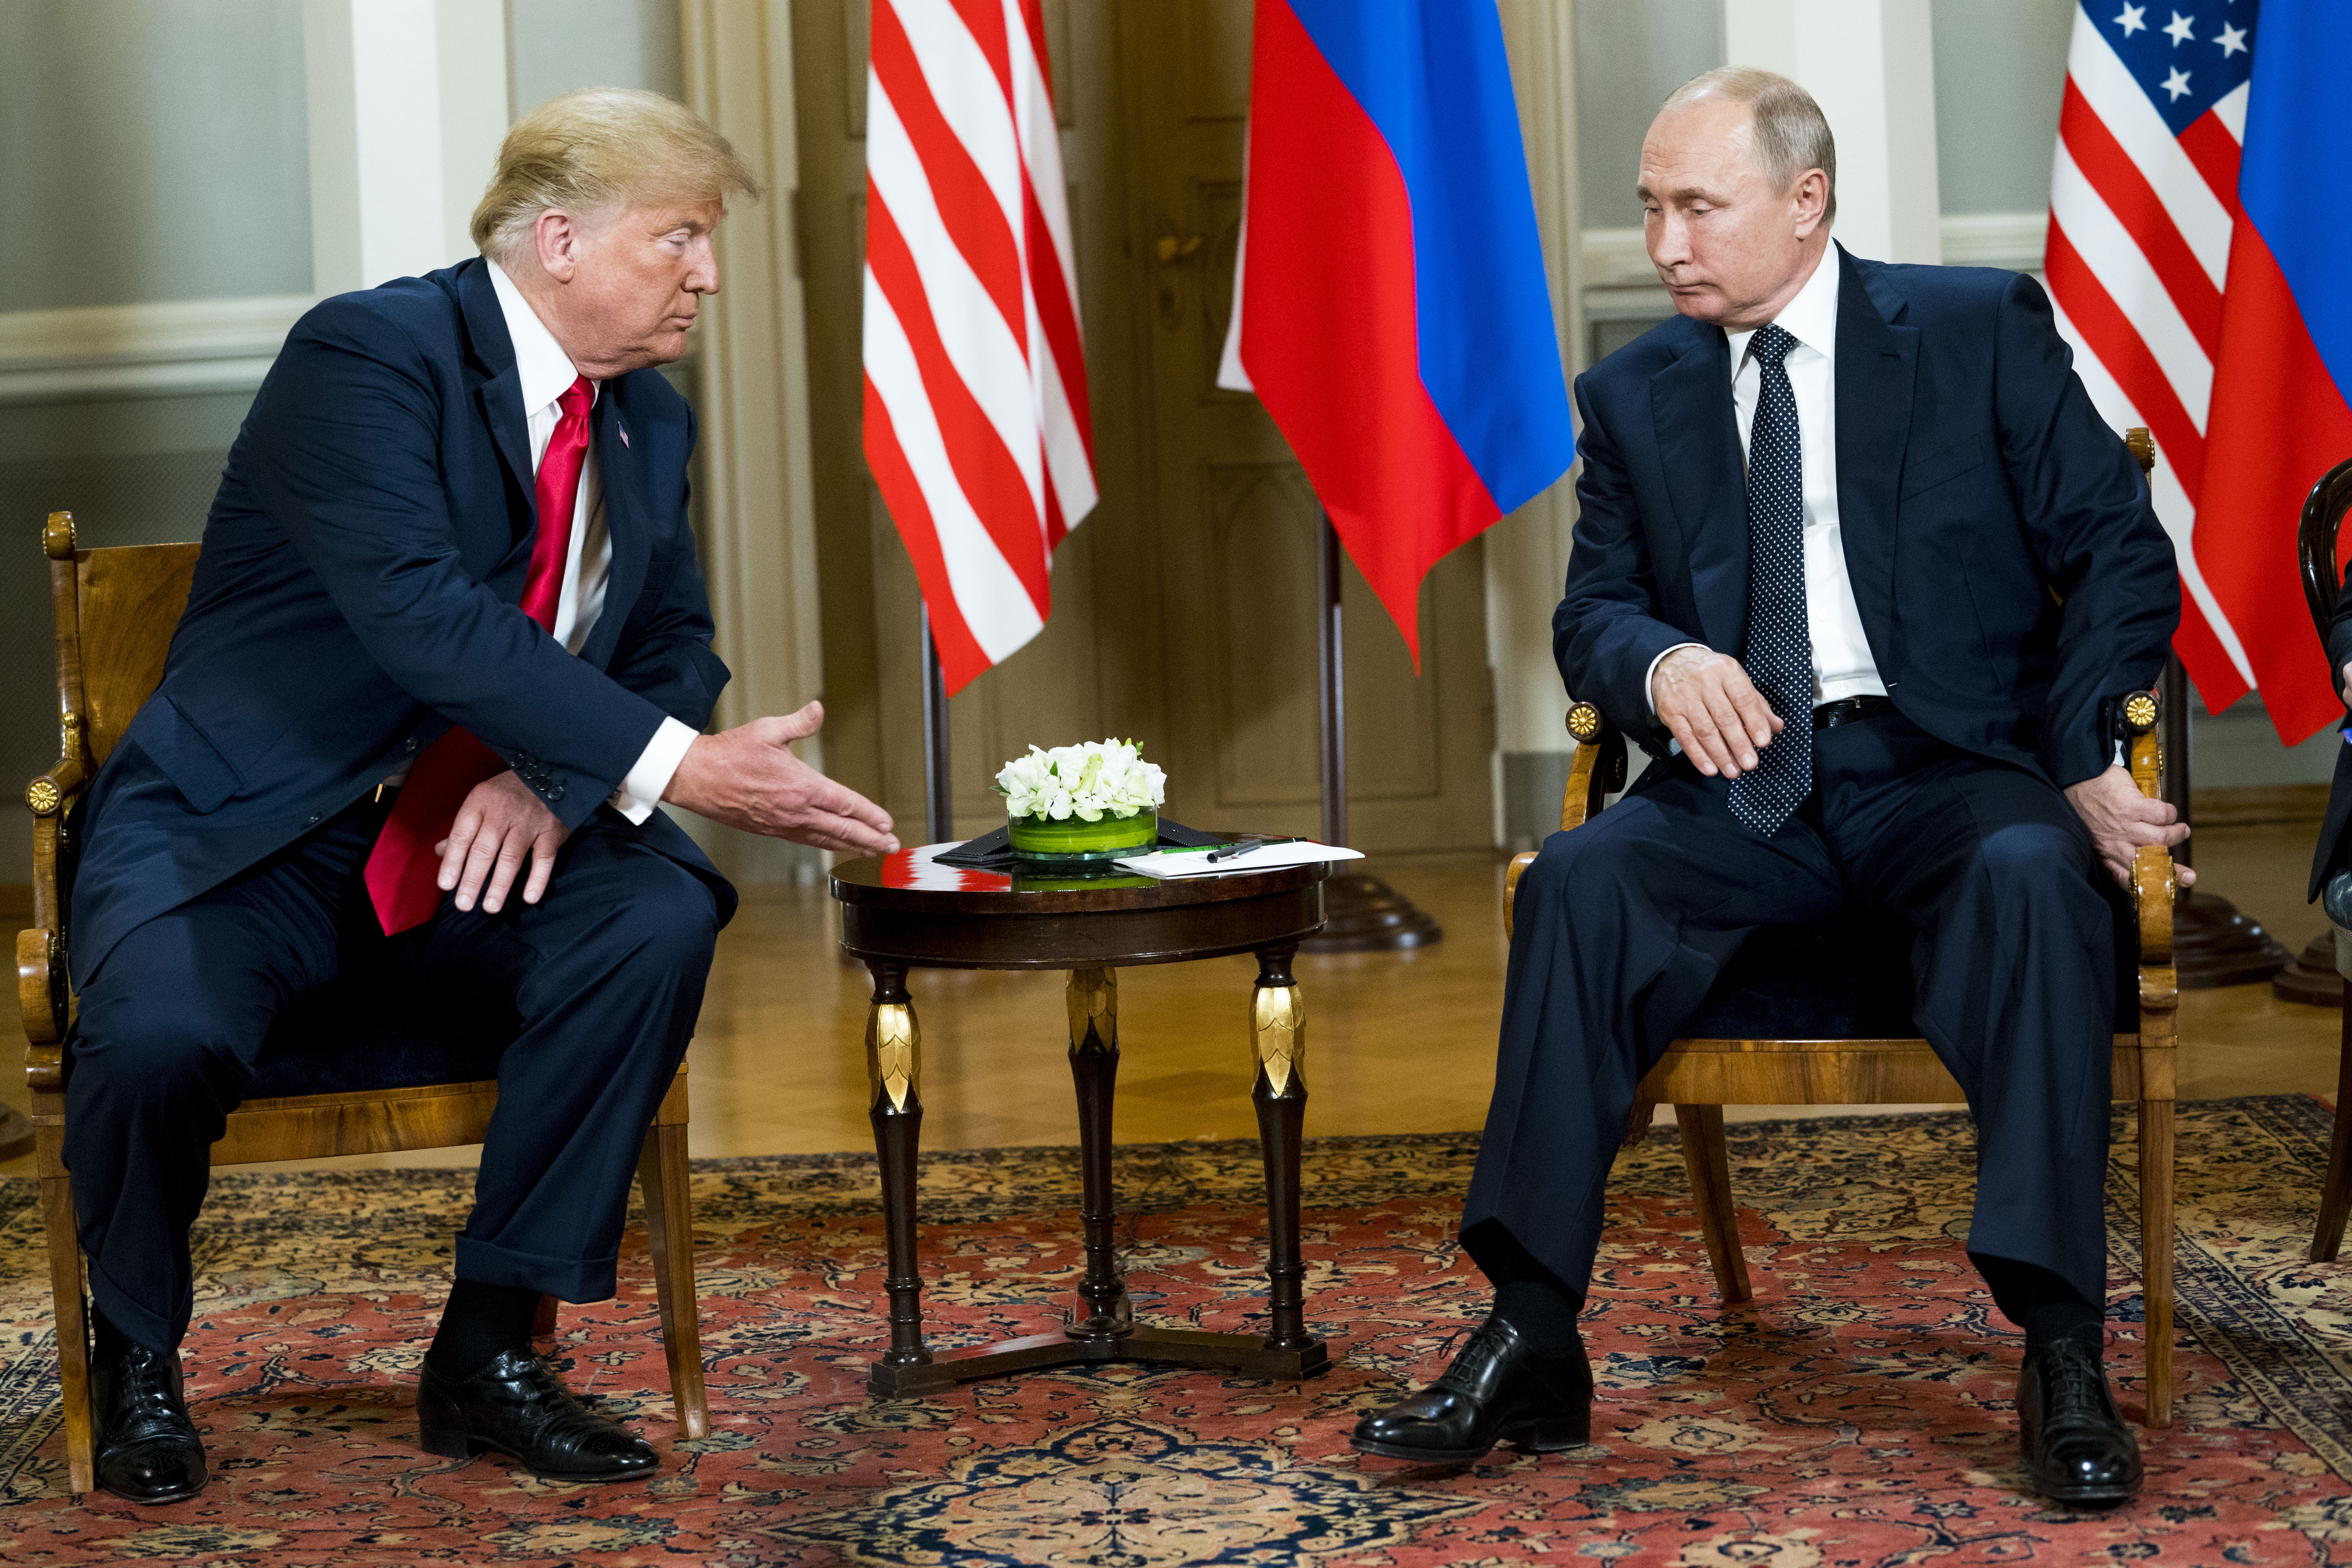 El presidente Vladimir Putin reunido con el presidente Donald Trump en 2018. (Foto: Doug Mills/The New York Times)